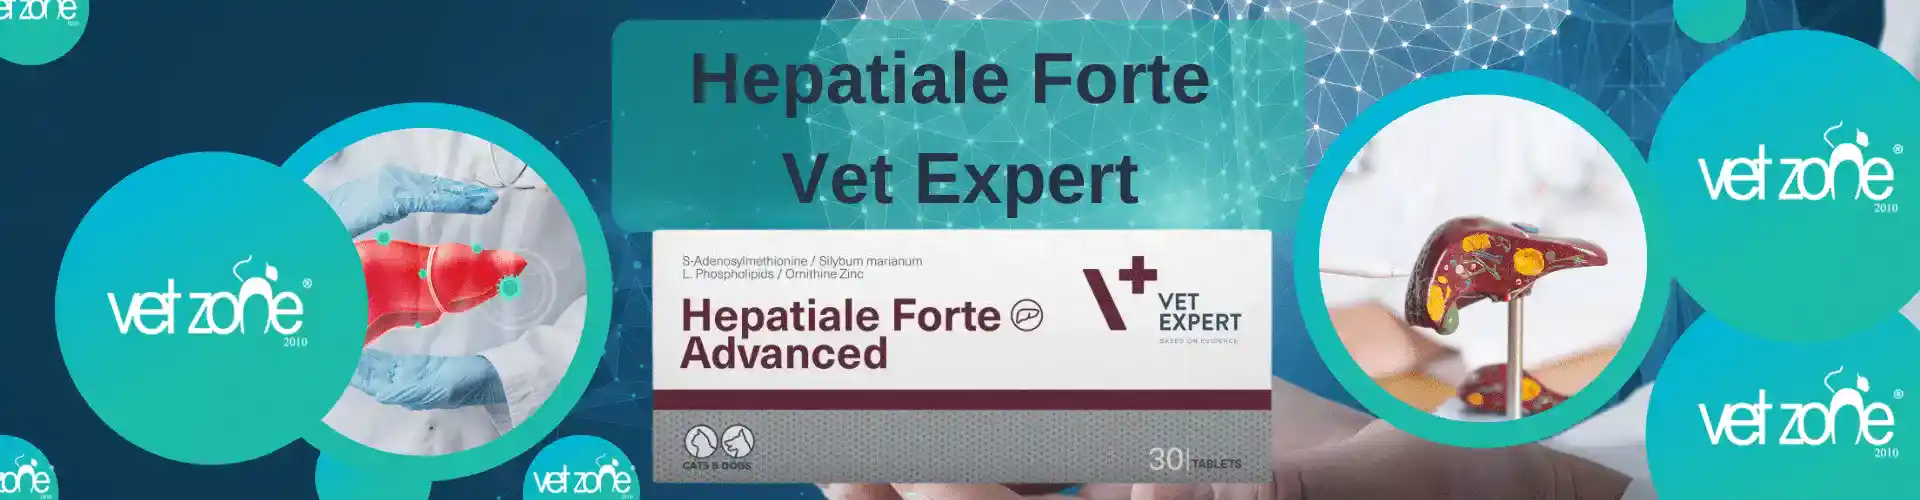 Hepatiale Forte Vet Expert